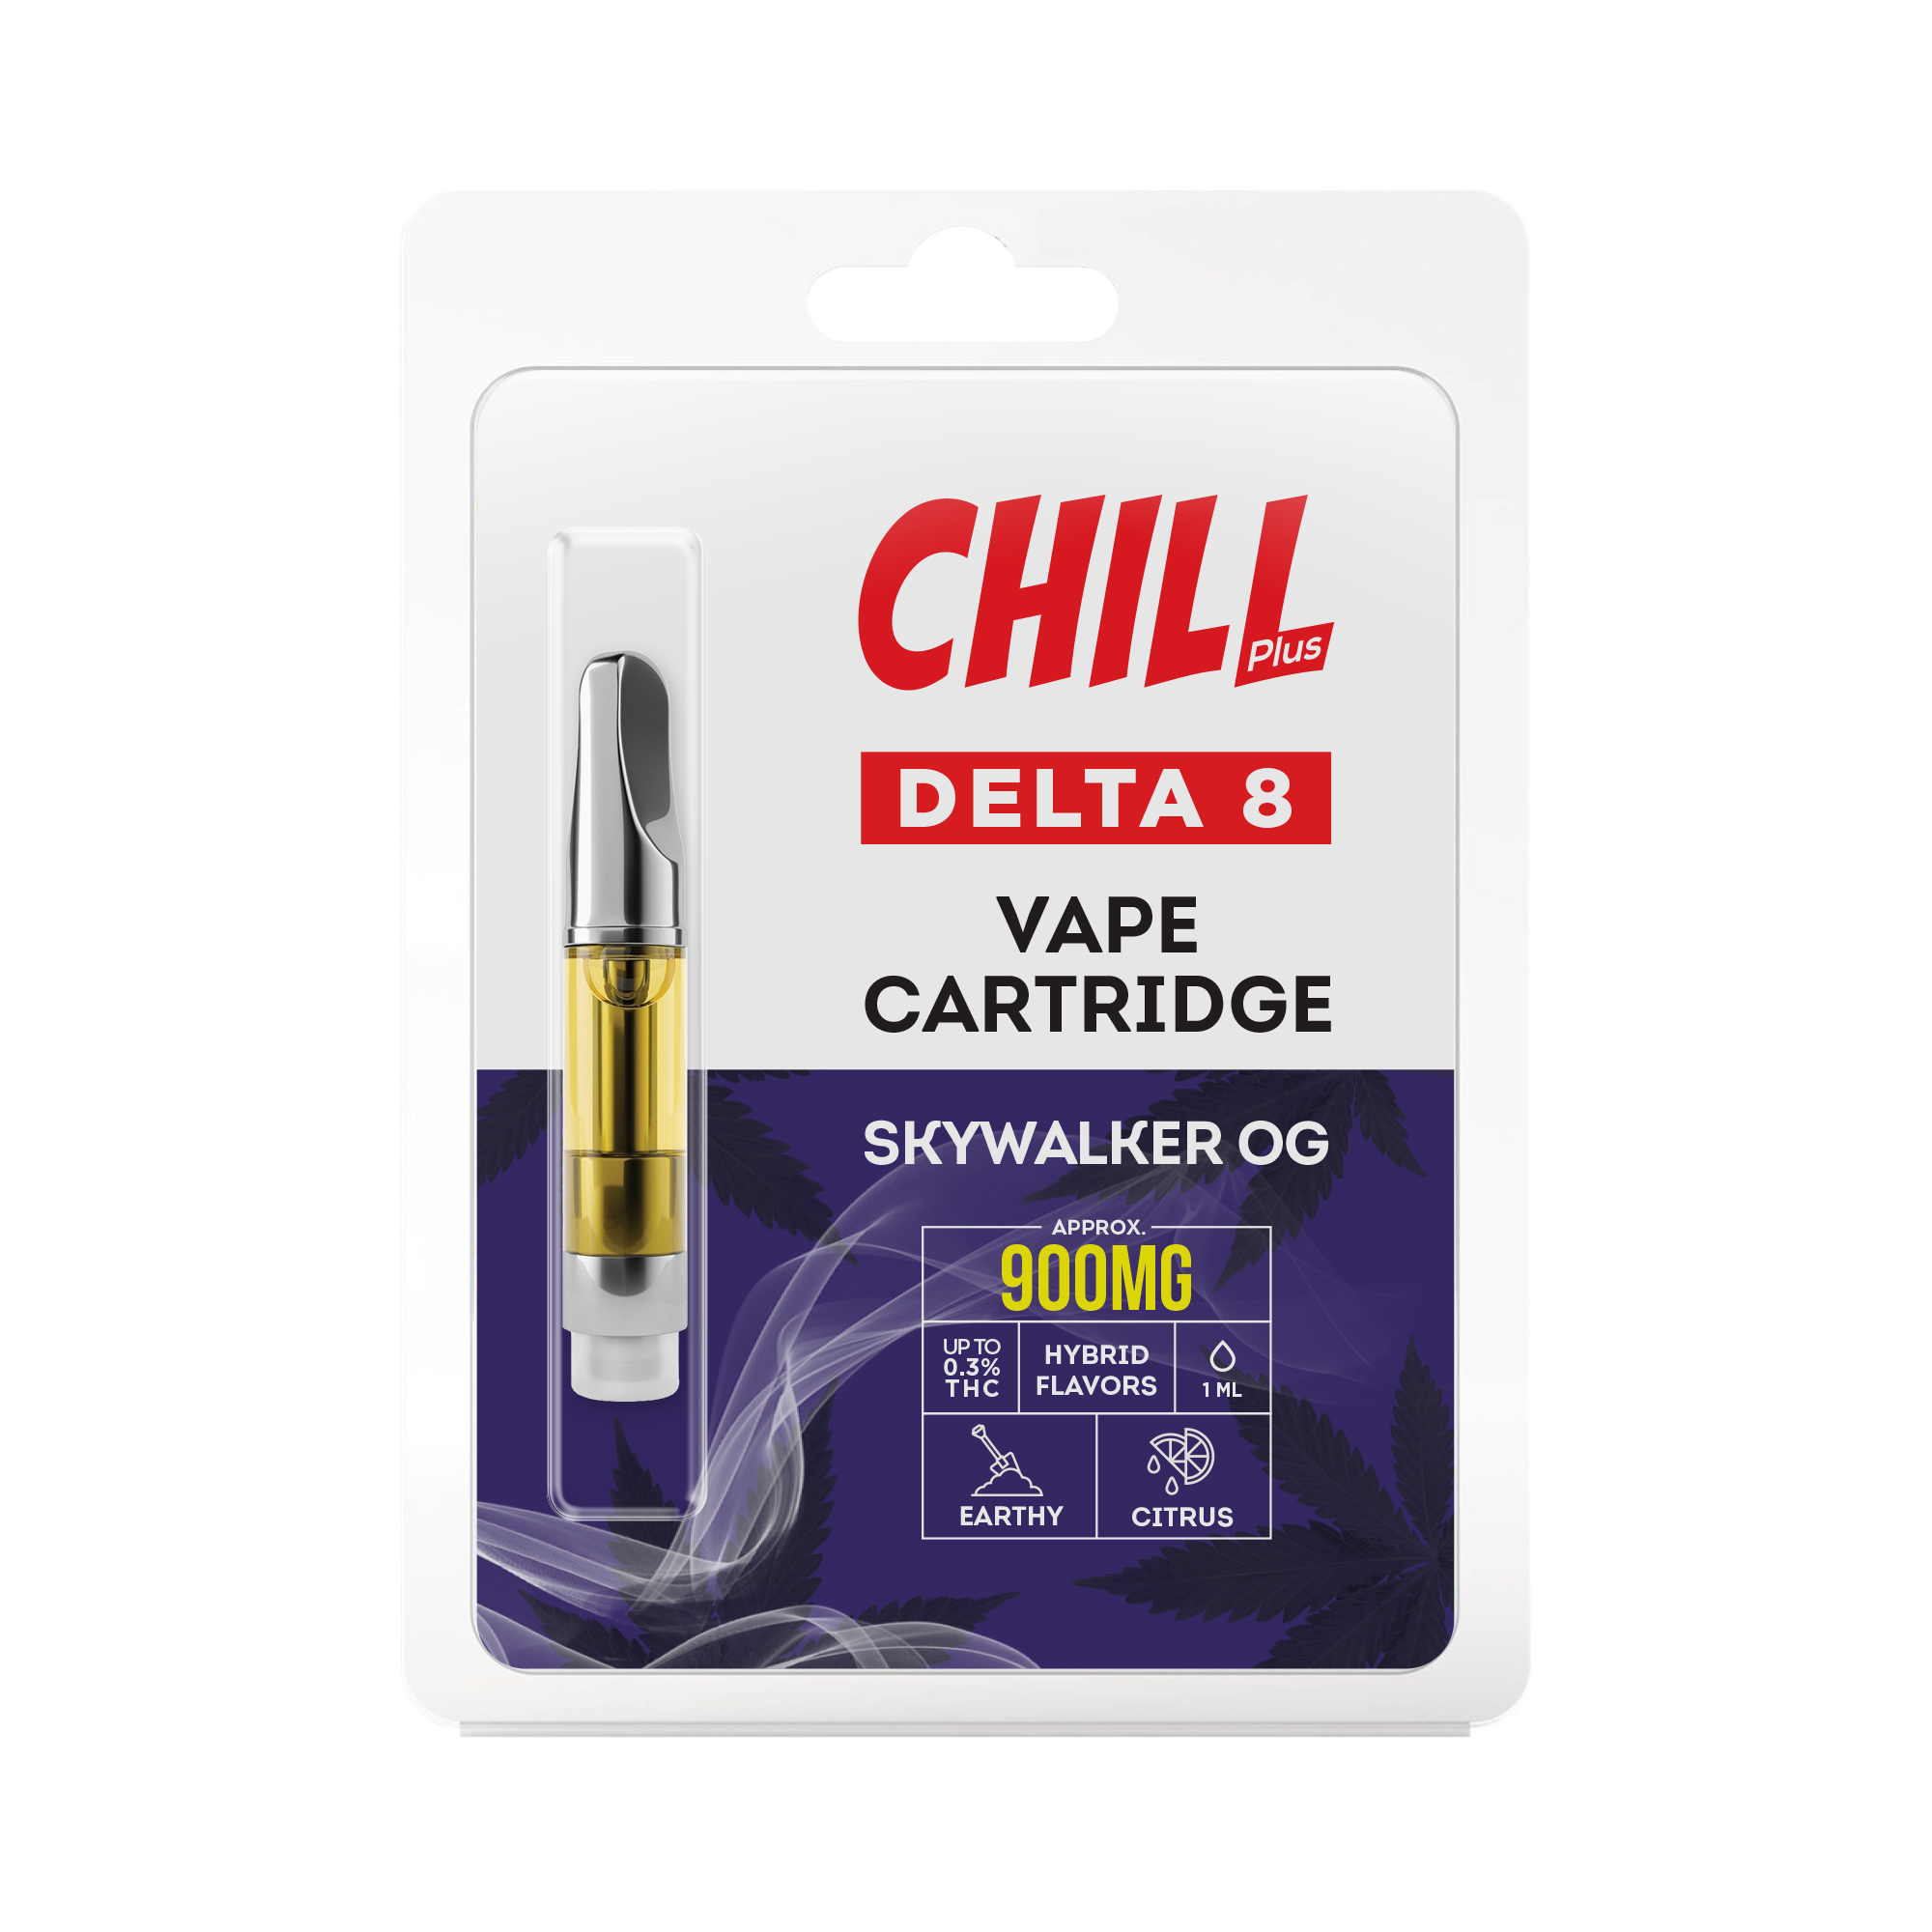 Chill Plus Delta-8 Vape Cartridge - Skywalker OG - 900mg (1ml) - Diamond CBD